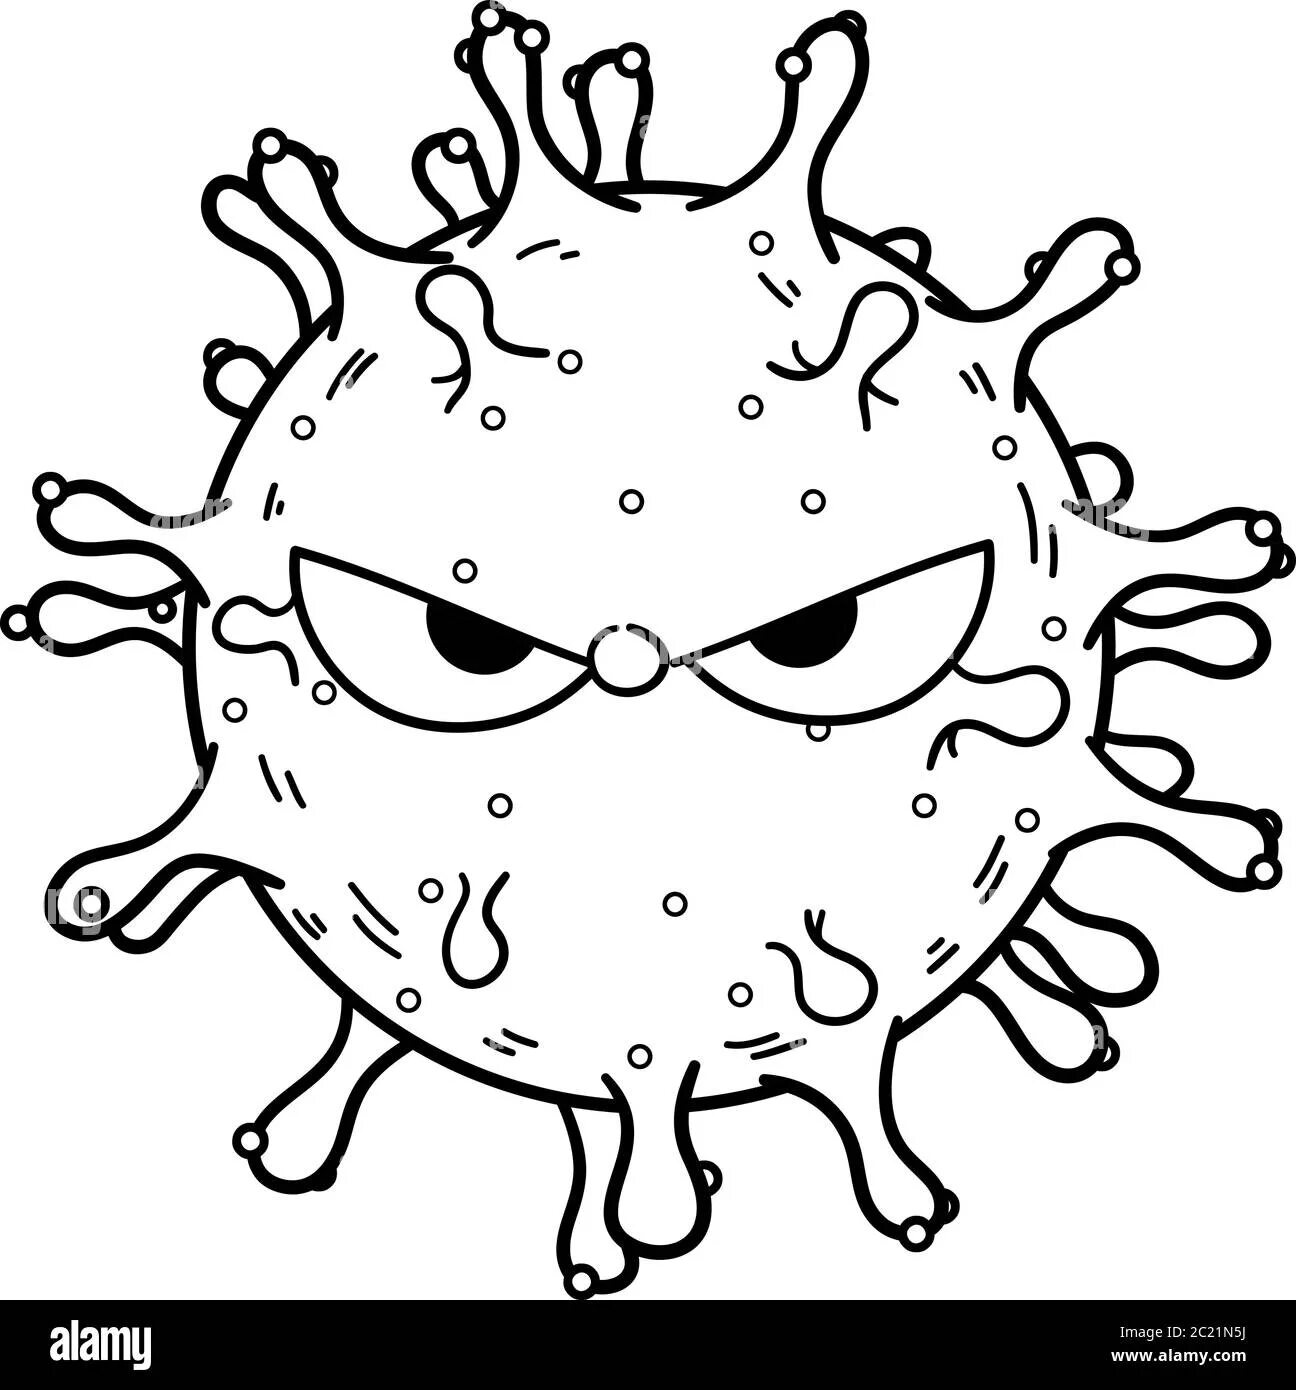 Вирусы и микробы для детей #6